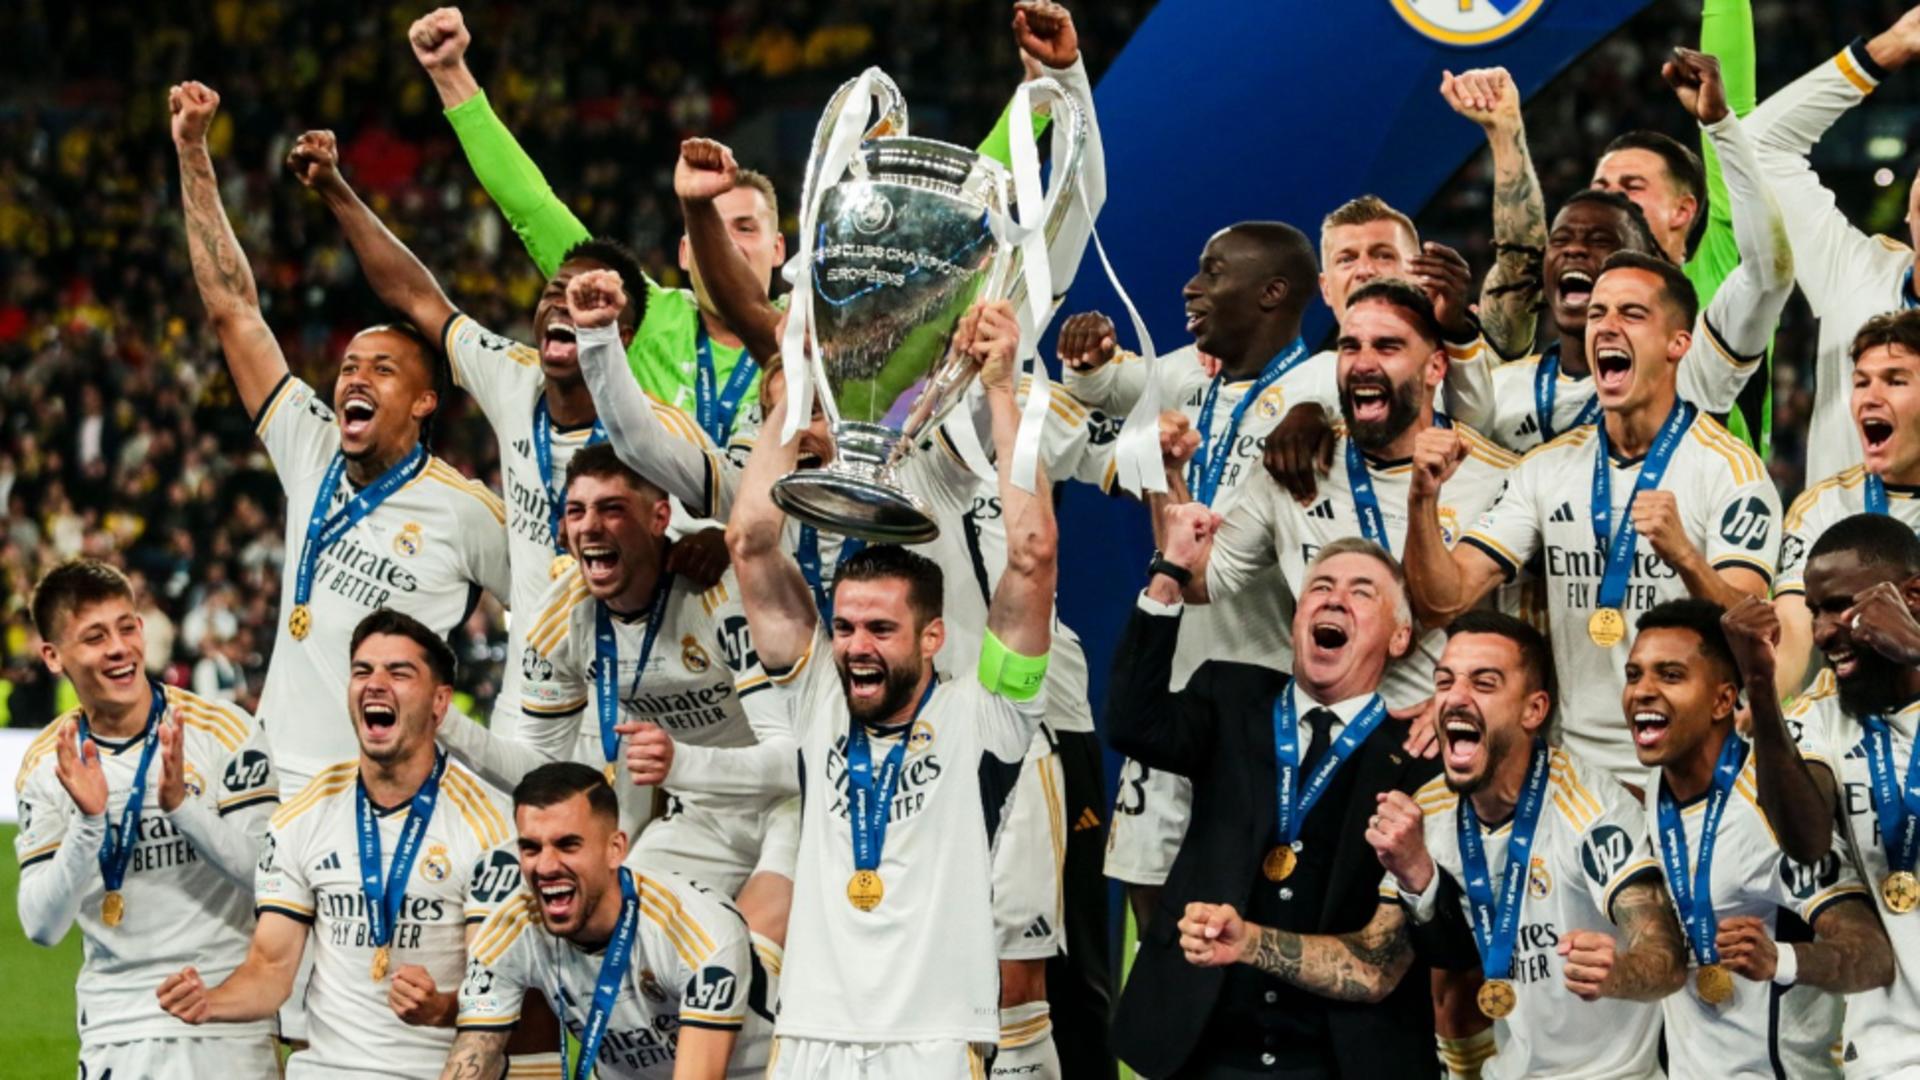 Real Madrid, triumfătoare, din nou, în Liga Campionilor. Echipa madrilenă a ajuns la trofeul cu numărul 15! REZUMAT